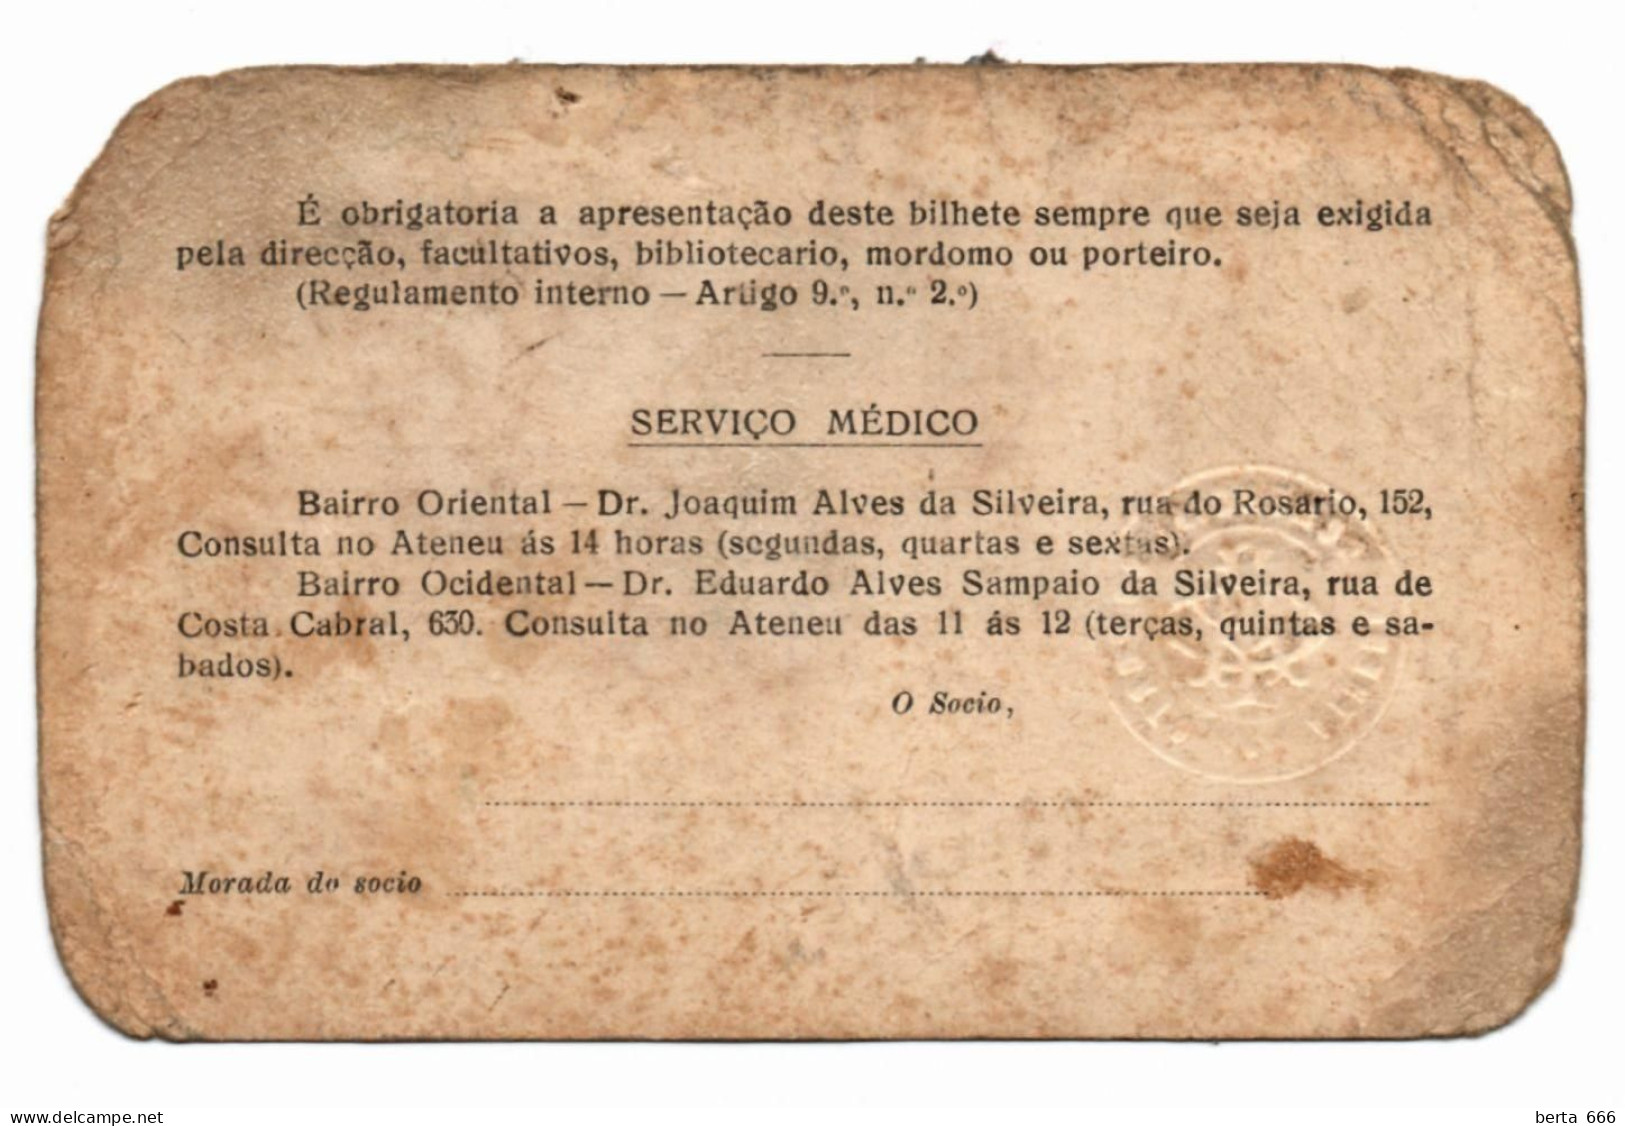 Ateneu Comercial Do Porto * Antigo Cartão De Indentidade De Sócio * Portugal Membership Card - Lidmaatschapskaarten